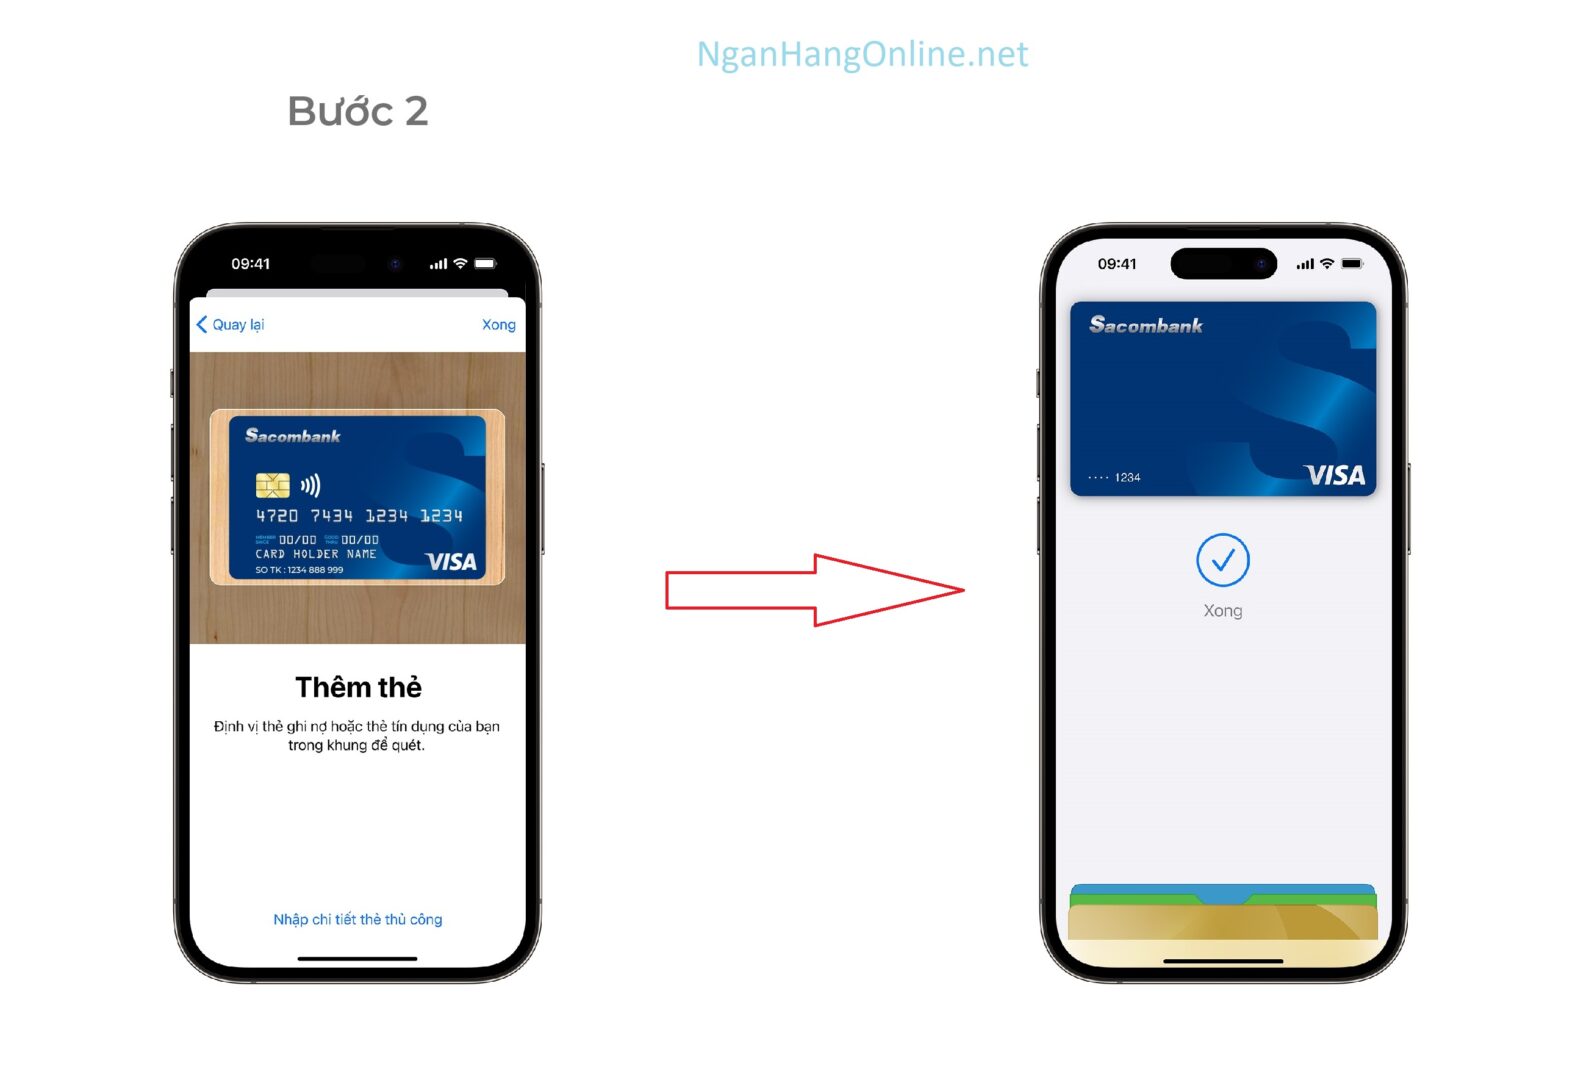 Cách thêm thẻ Sacombank vào Apple Pay trên iPhone